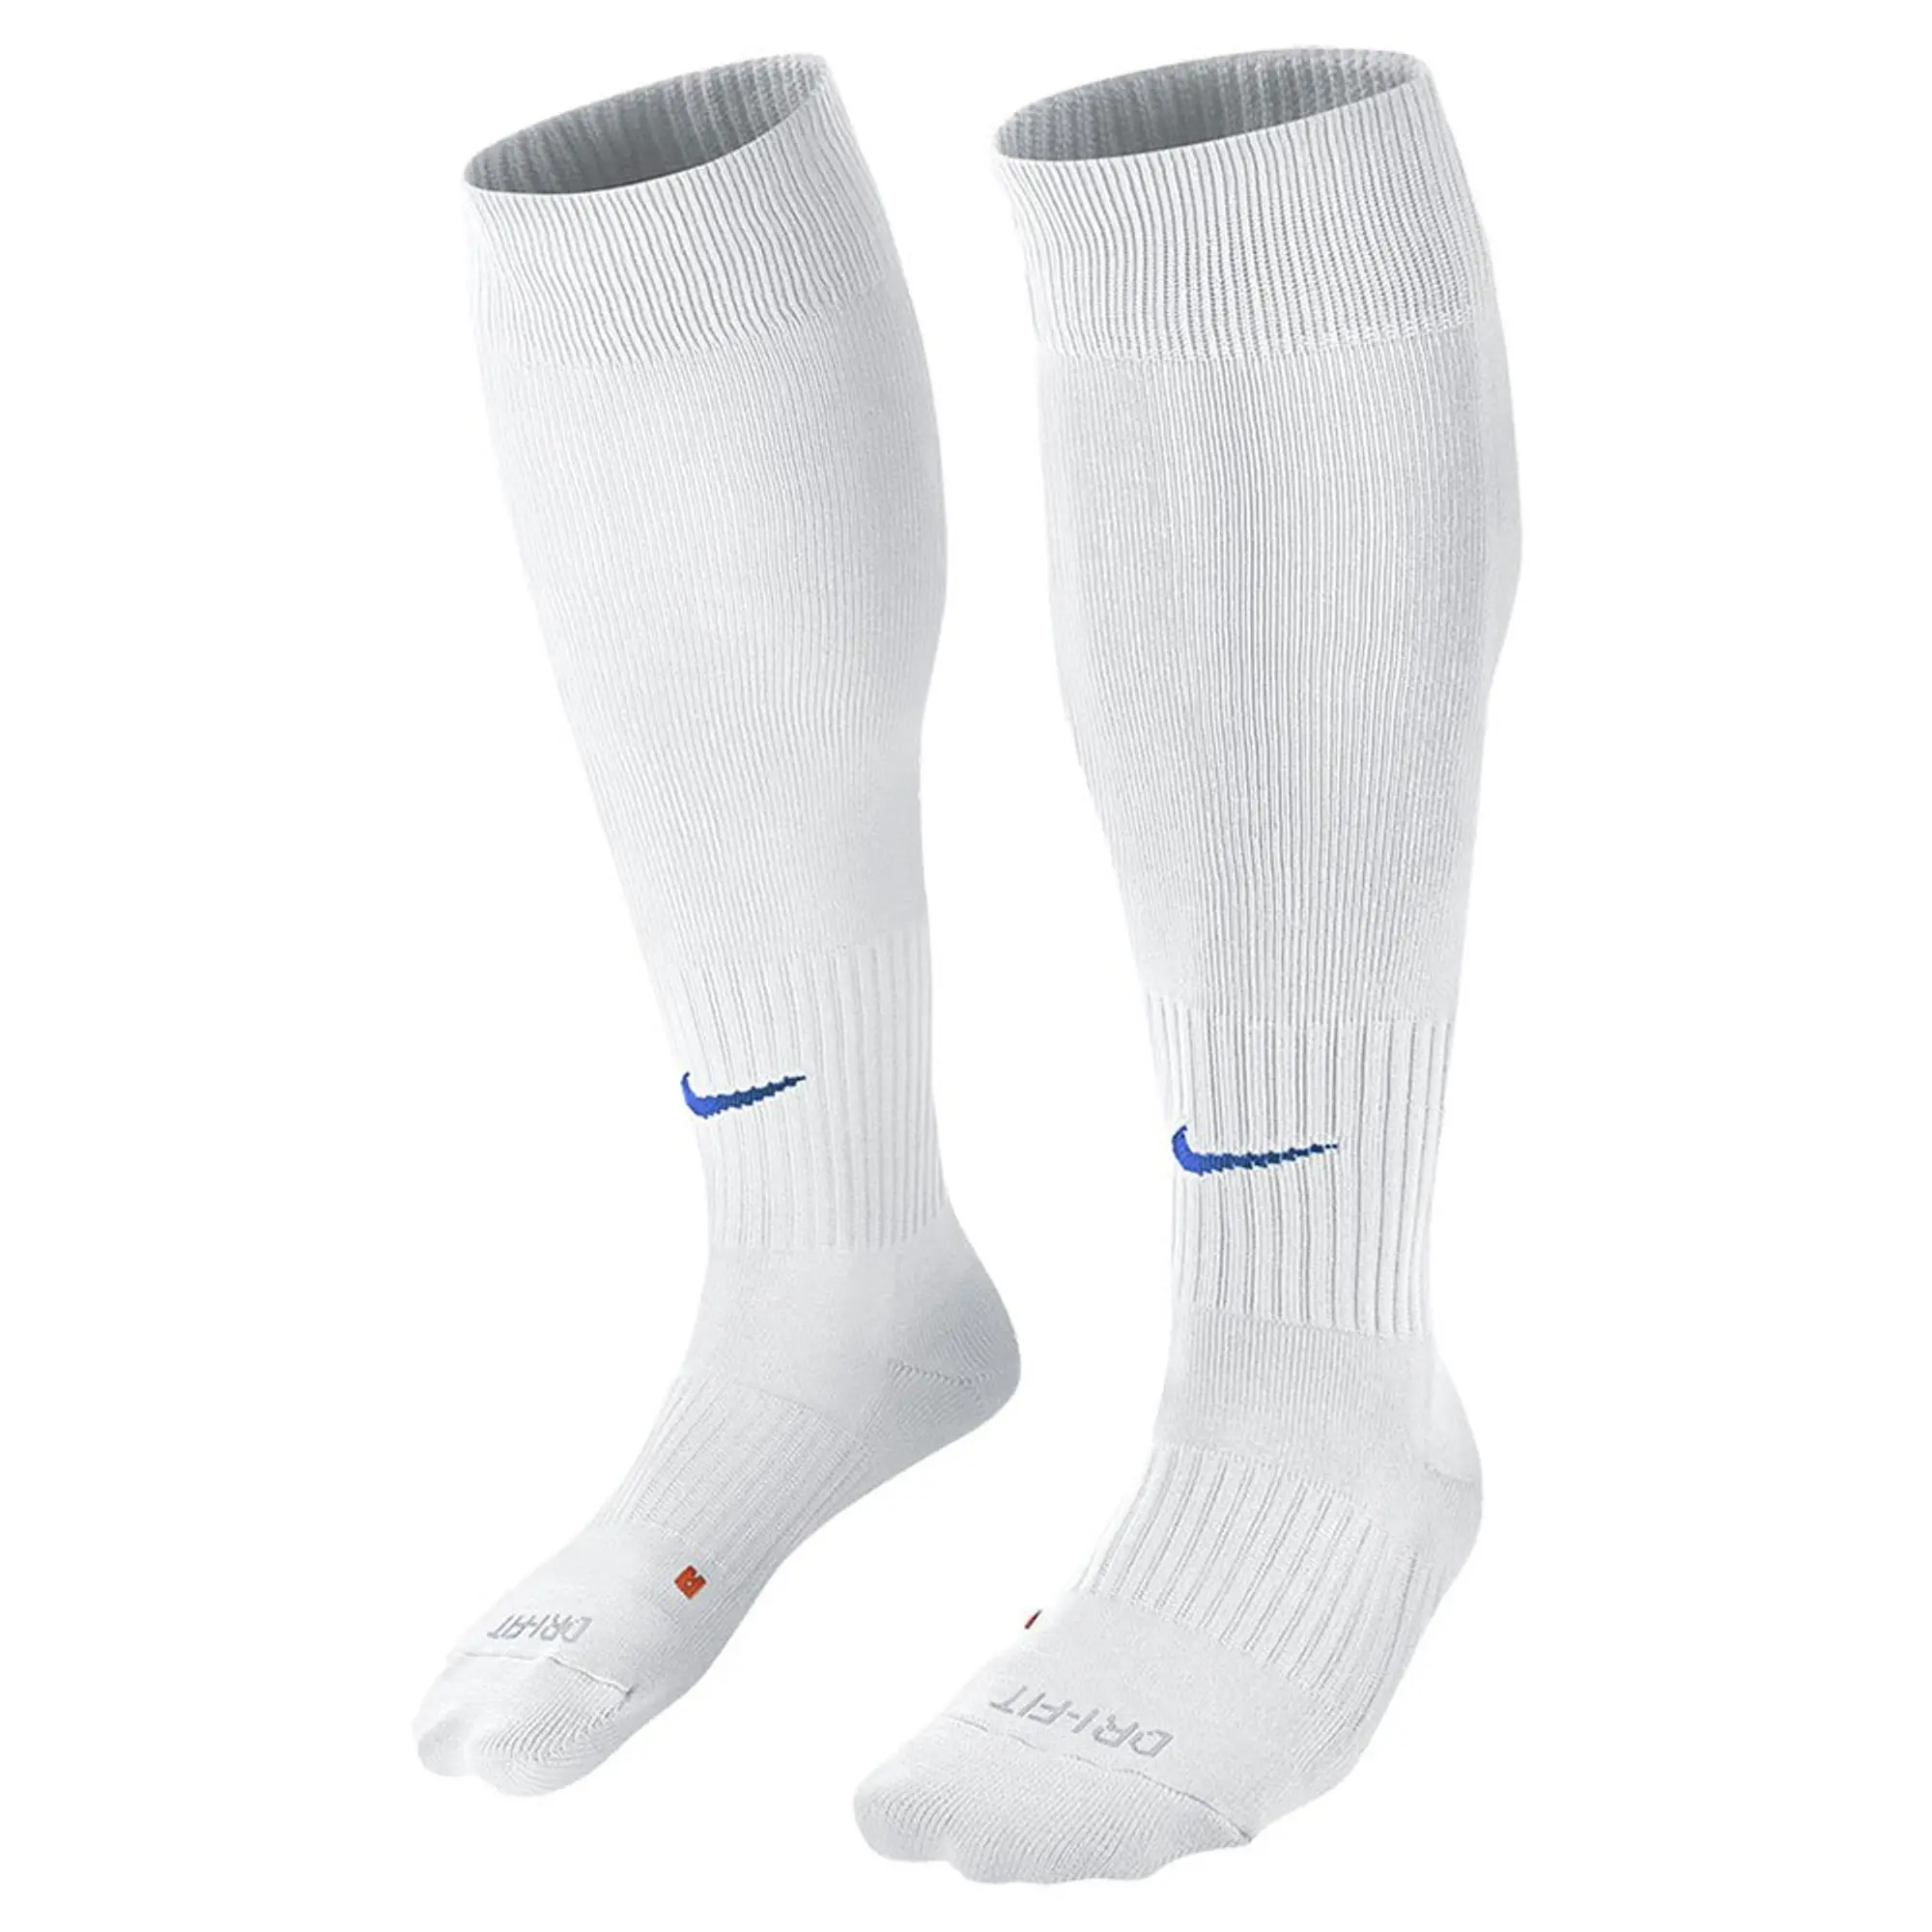 Nike Football Socks Classic Ii Otc - White